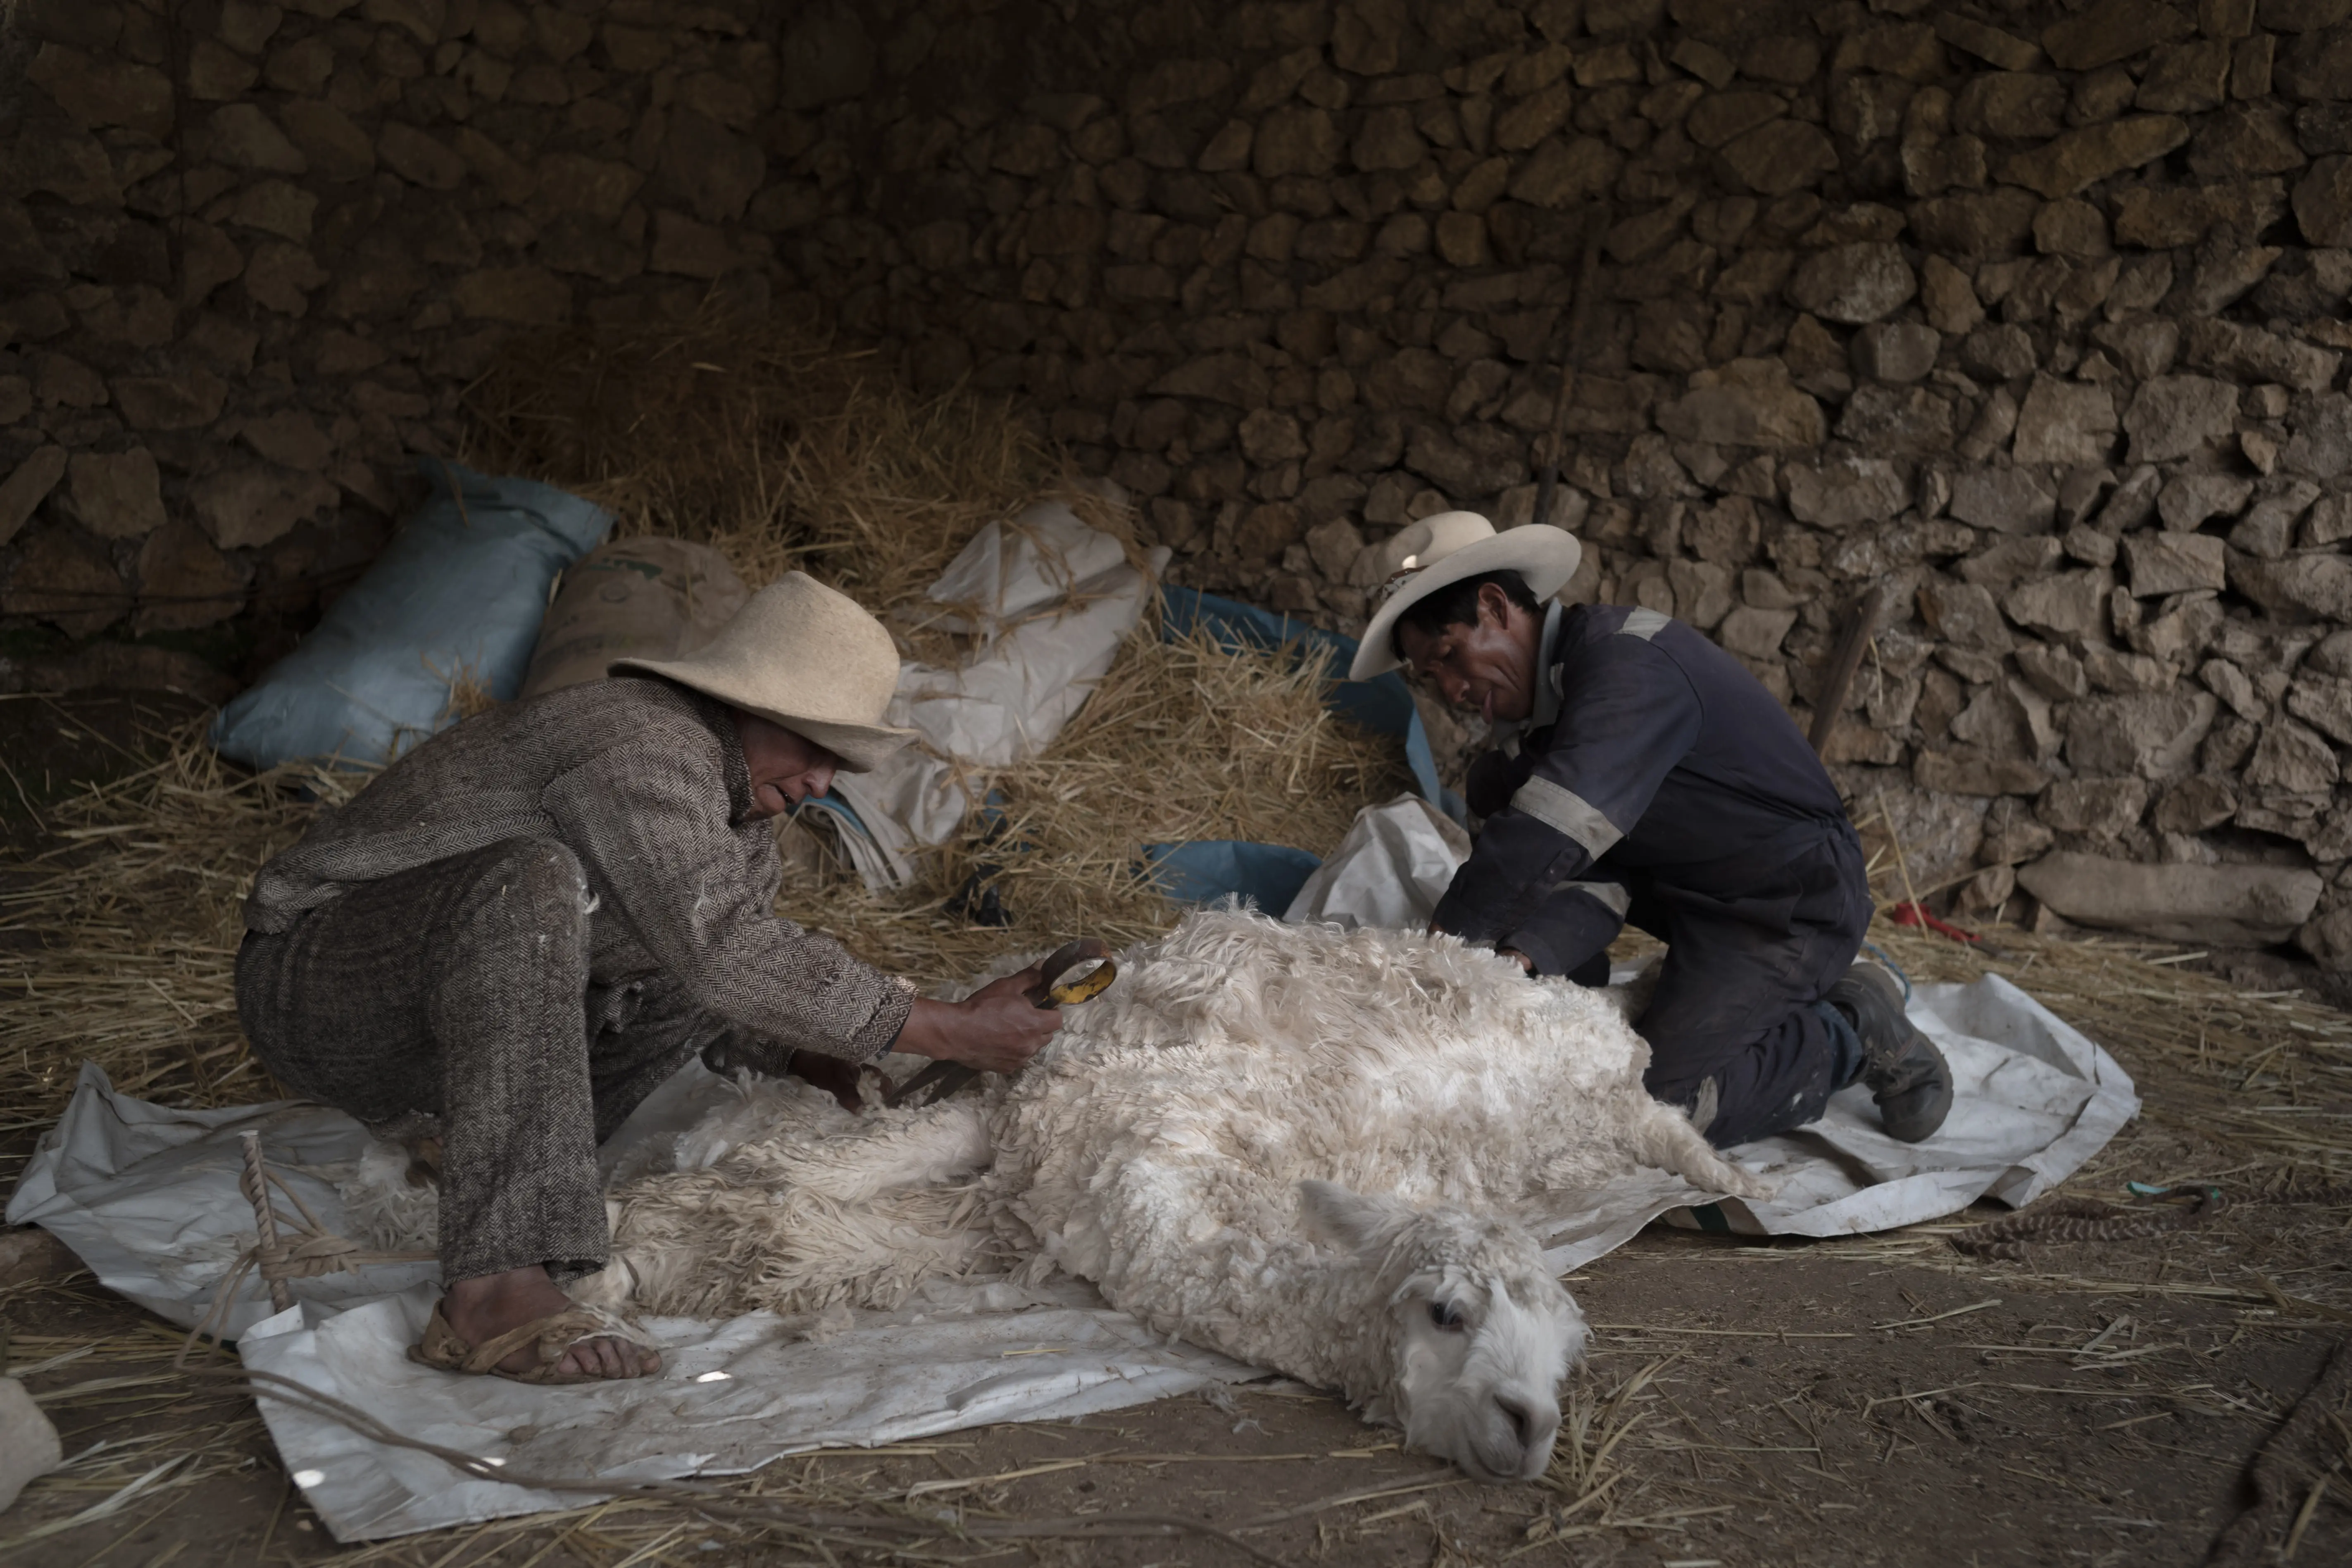 An alpaca is sheared of it's fleece